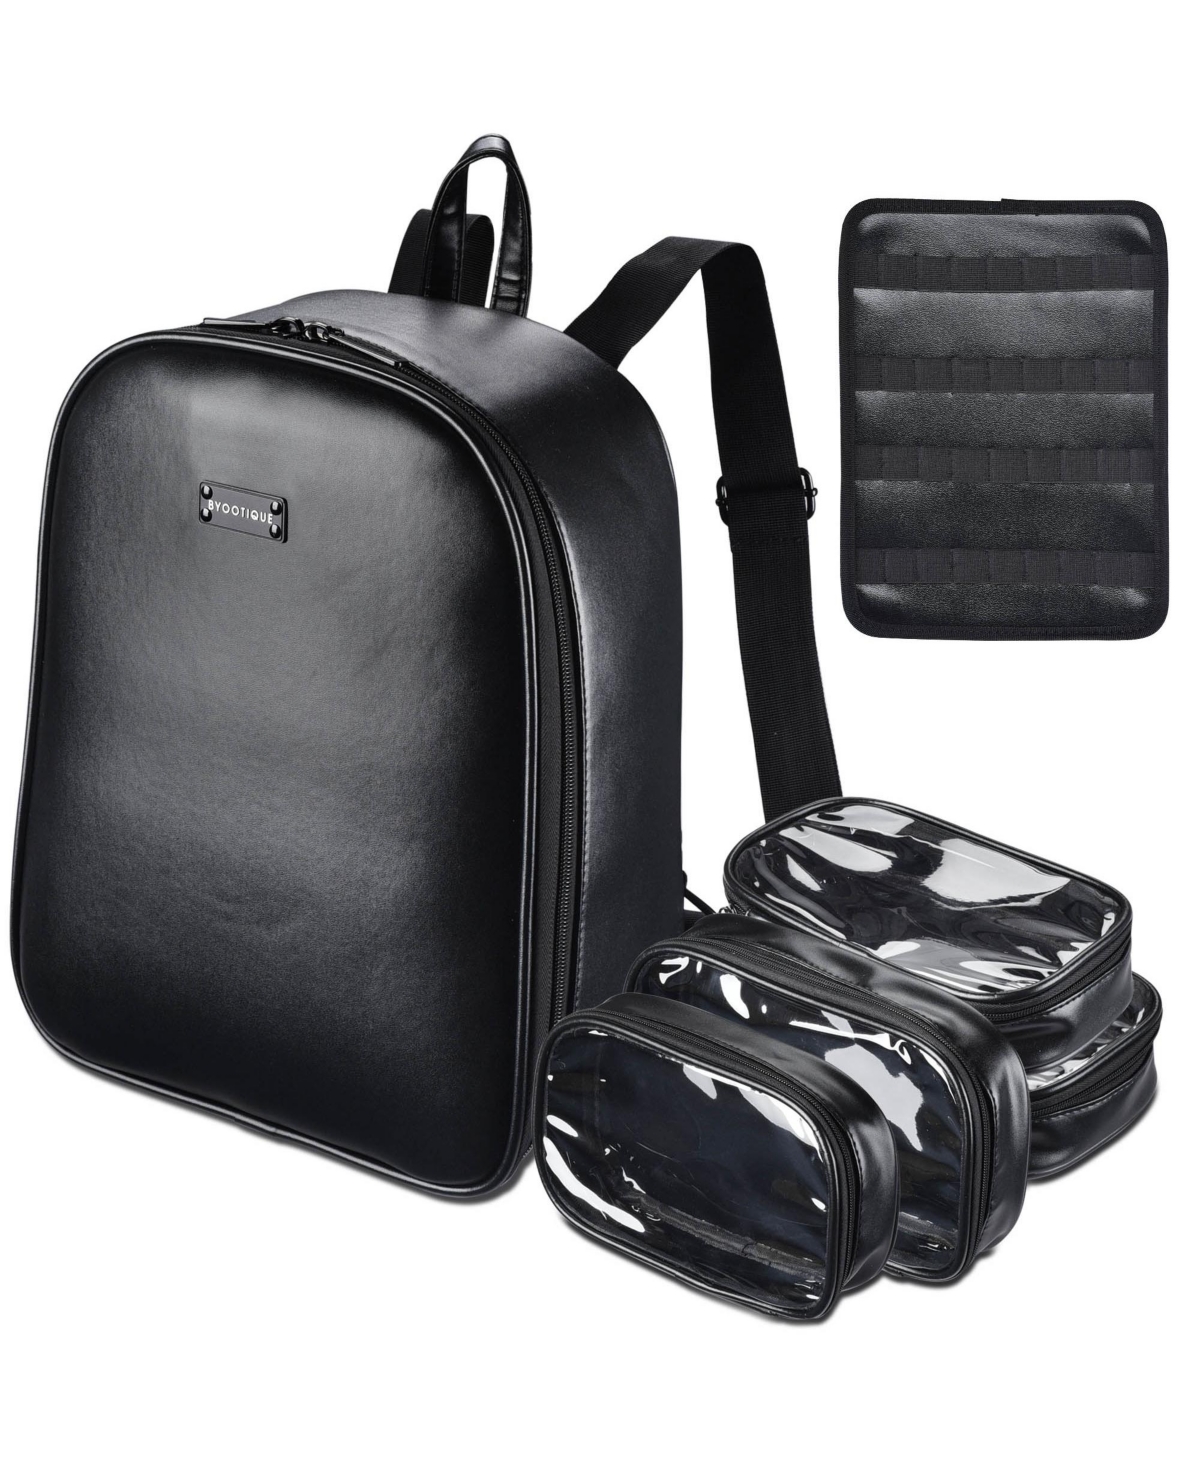 14" Makeup Backpack Cosmetic Storage Shoulder Bag Traveling Organizer - Black